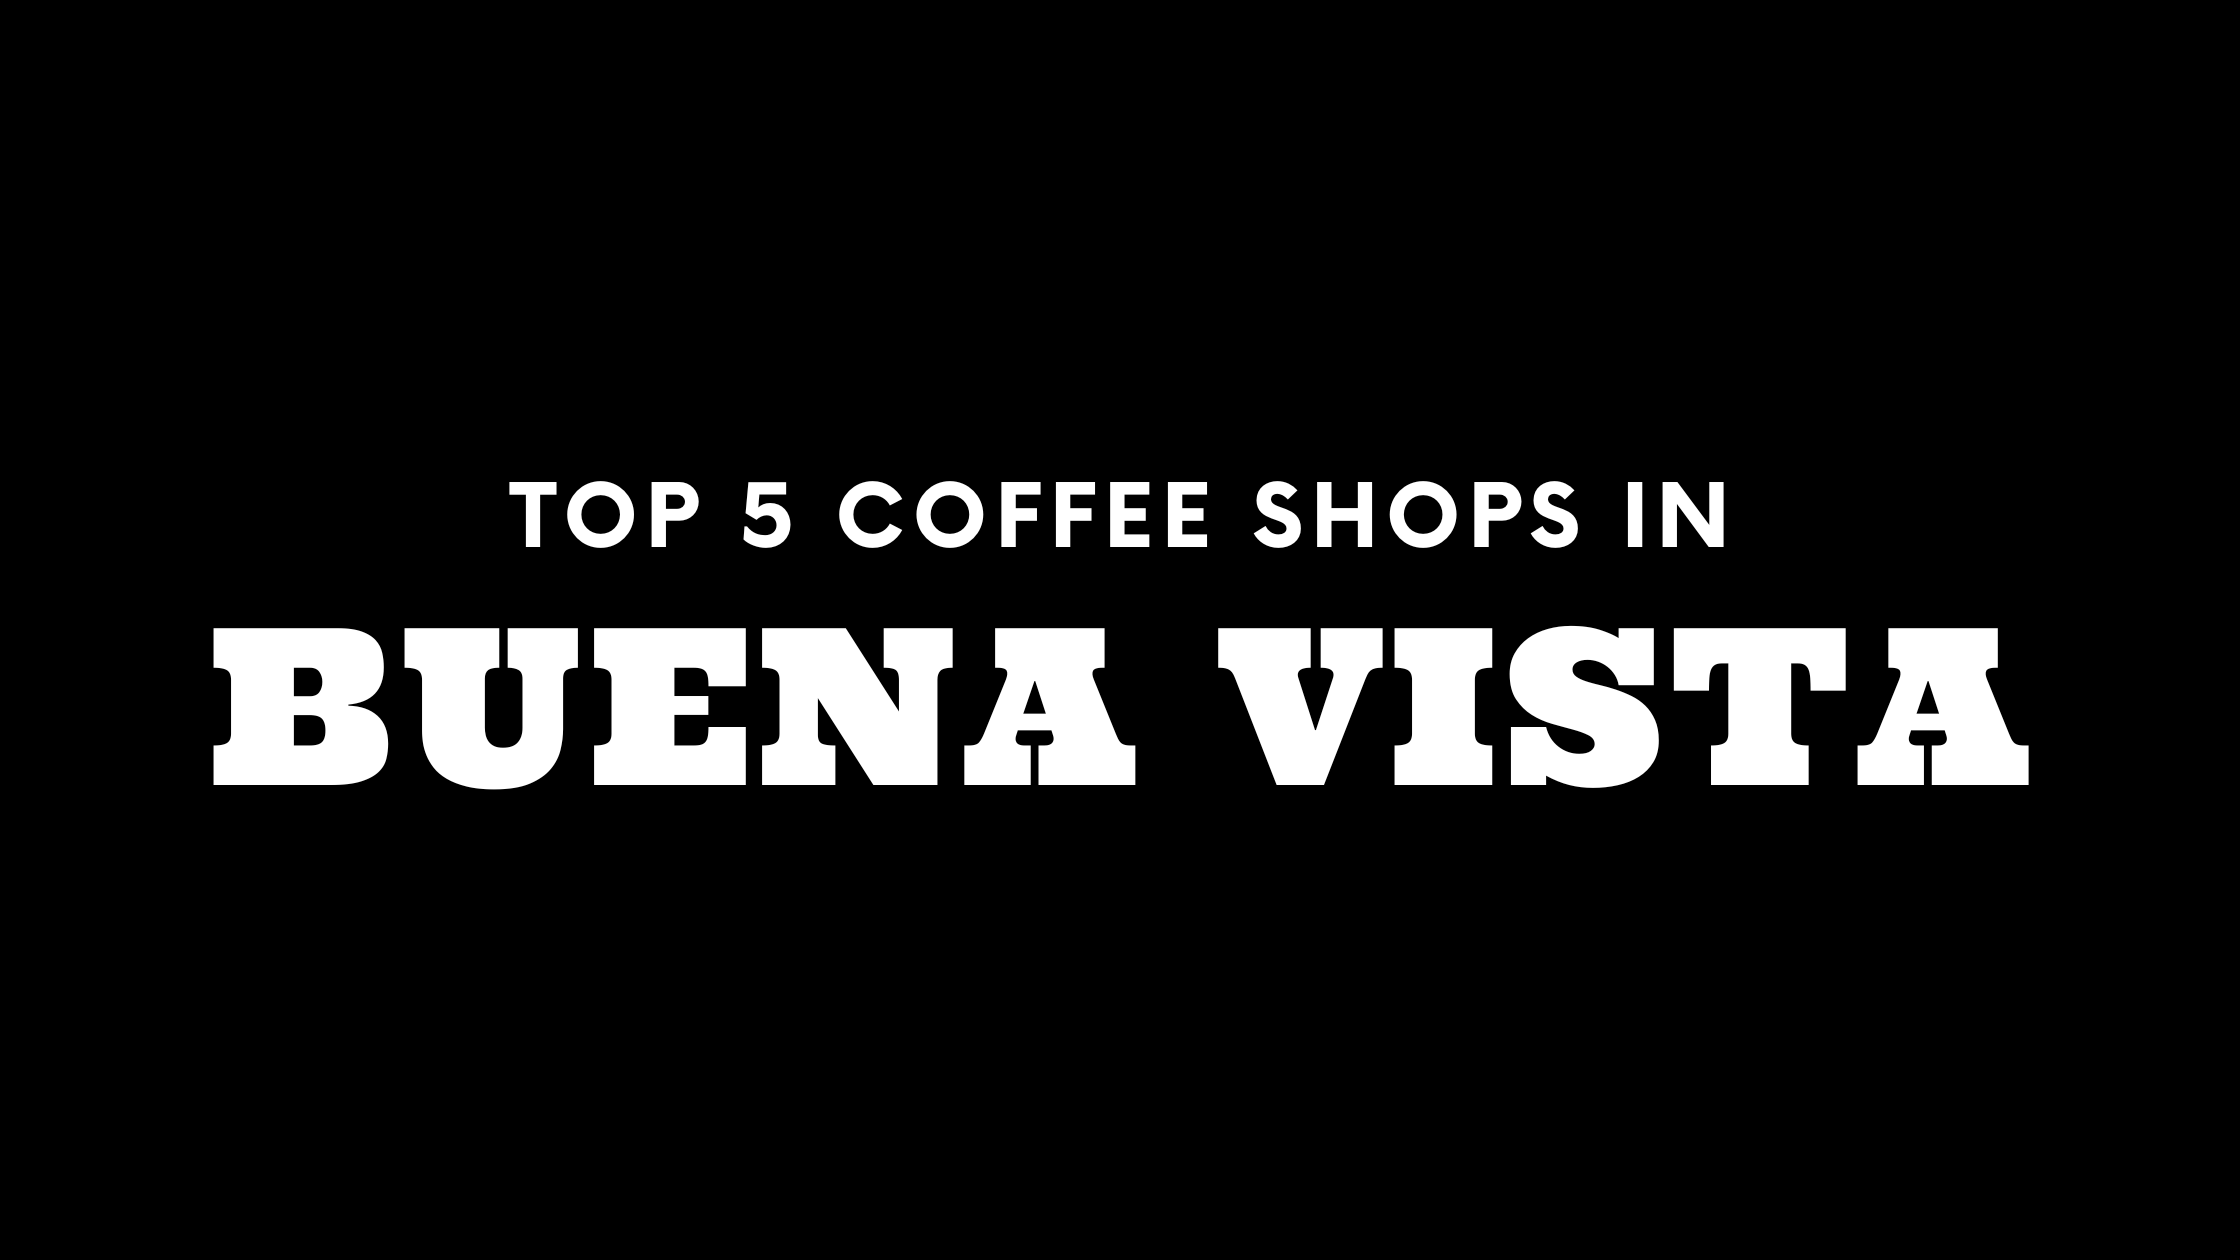 Top 5 Coffee Shops in Buena Vista